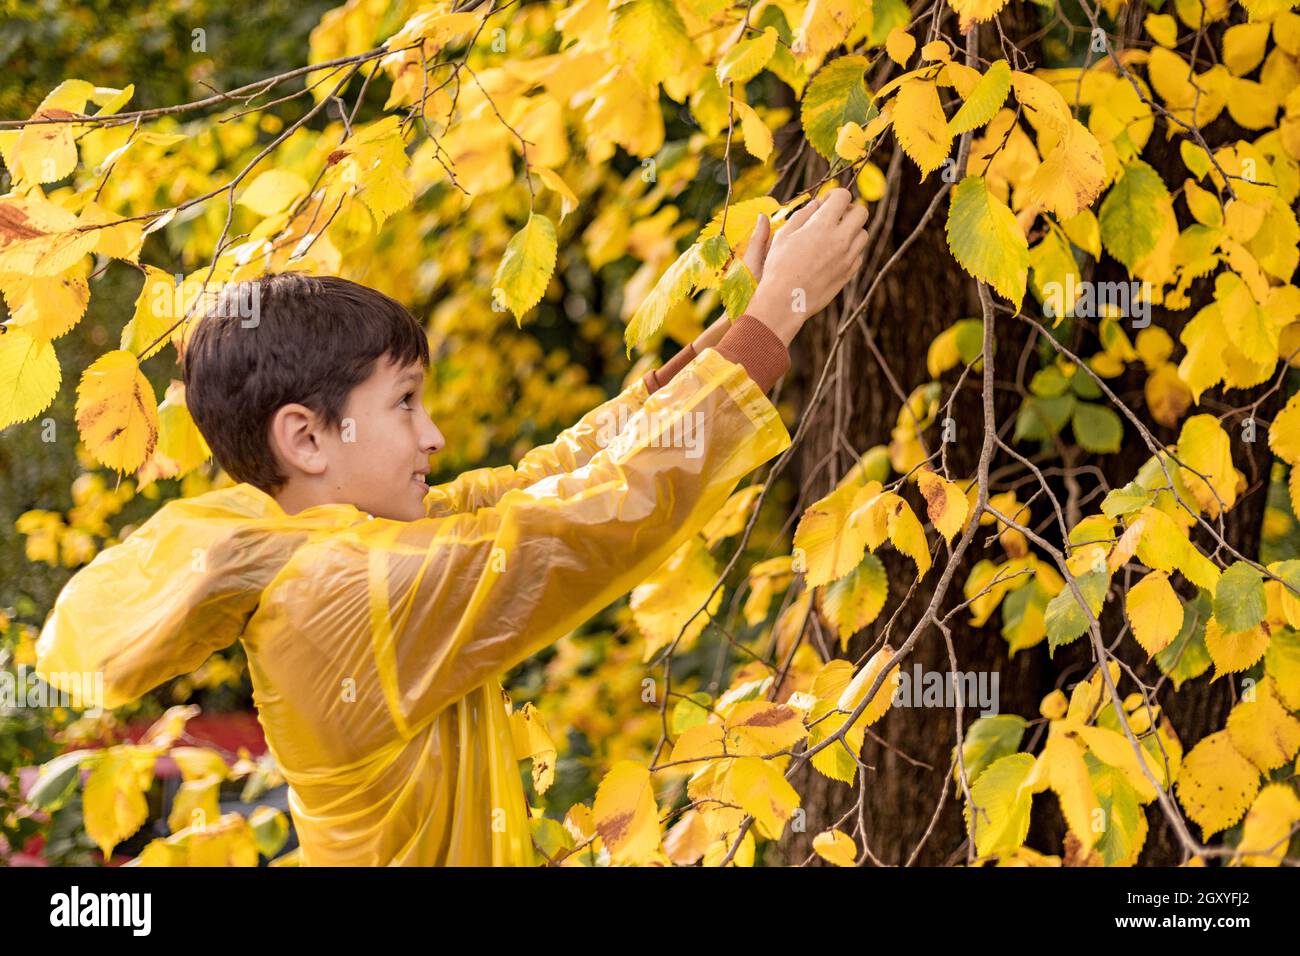 Photo d'un garçon adolescent dans un imperméable jaune parmi les feuilles d'automne, marchant dans le parc, cueillant des feuilles Banque D'Images